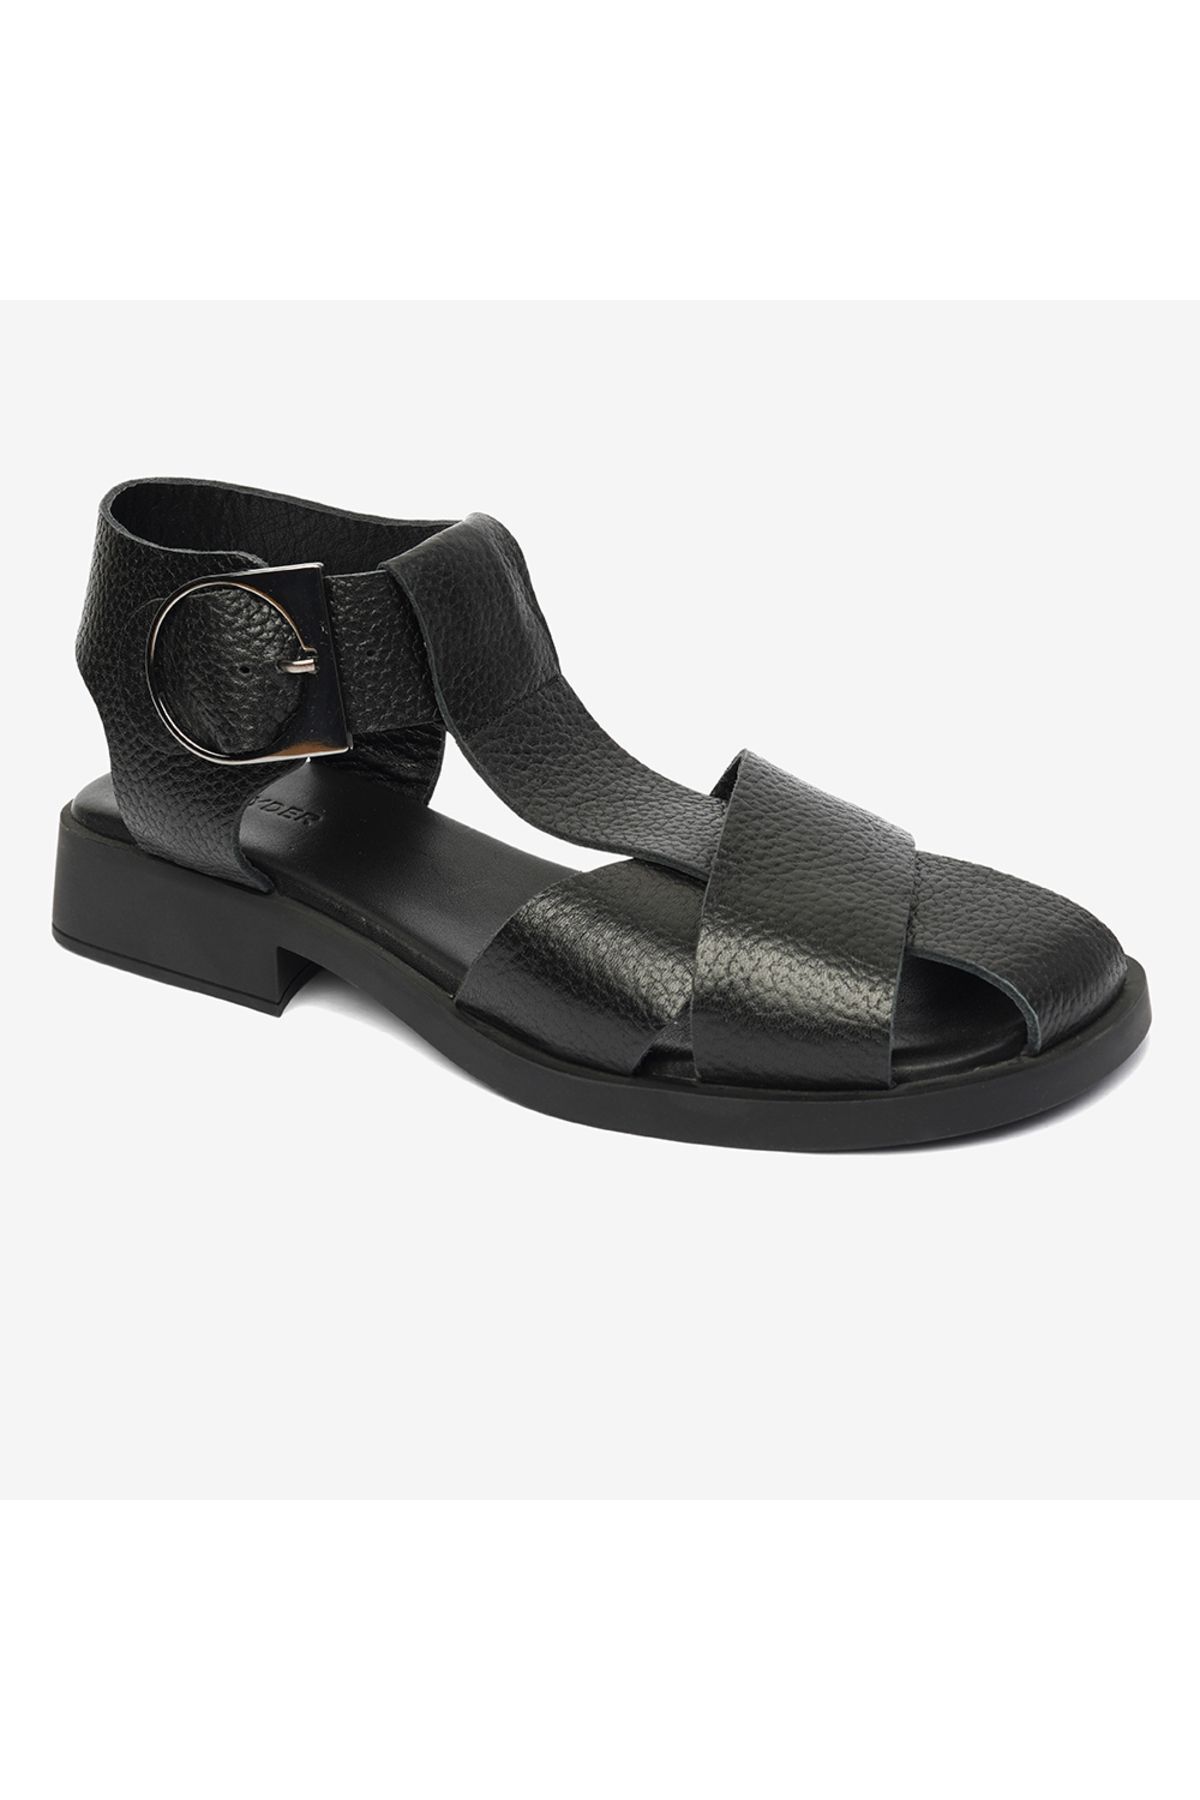 Greyder Kadın Siyah Hakiki Deri Sandalet 4y2as59013